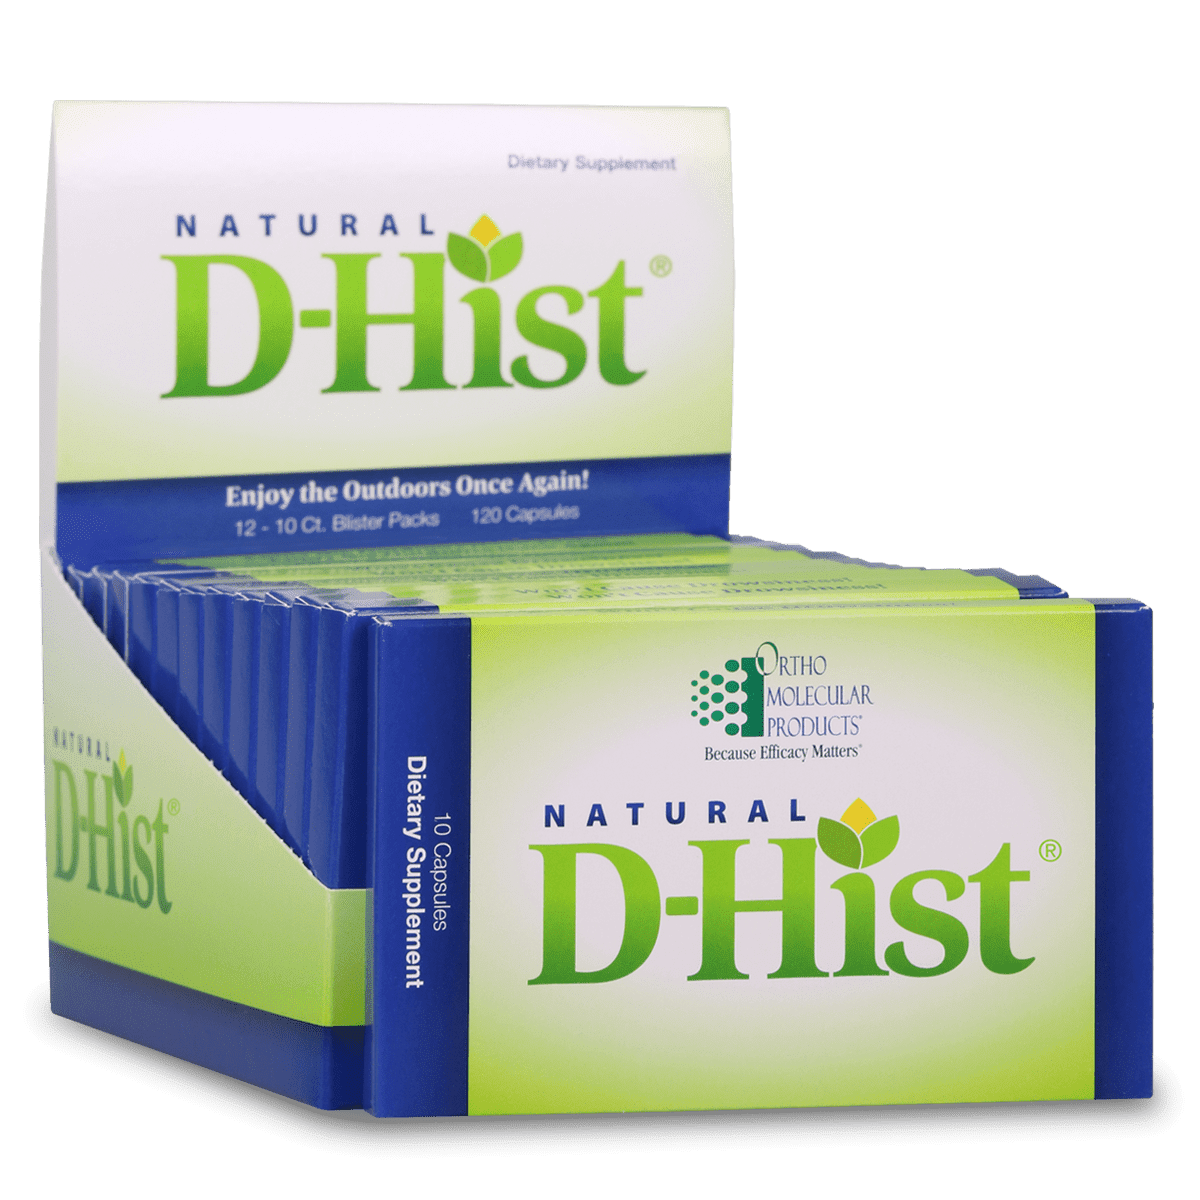 Natural D Hist Blister Packs